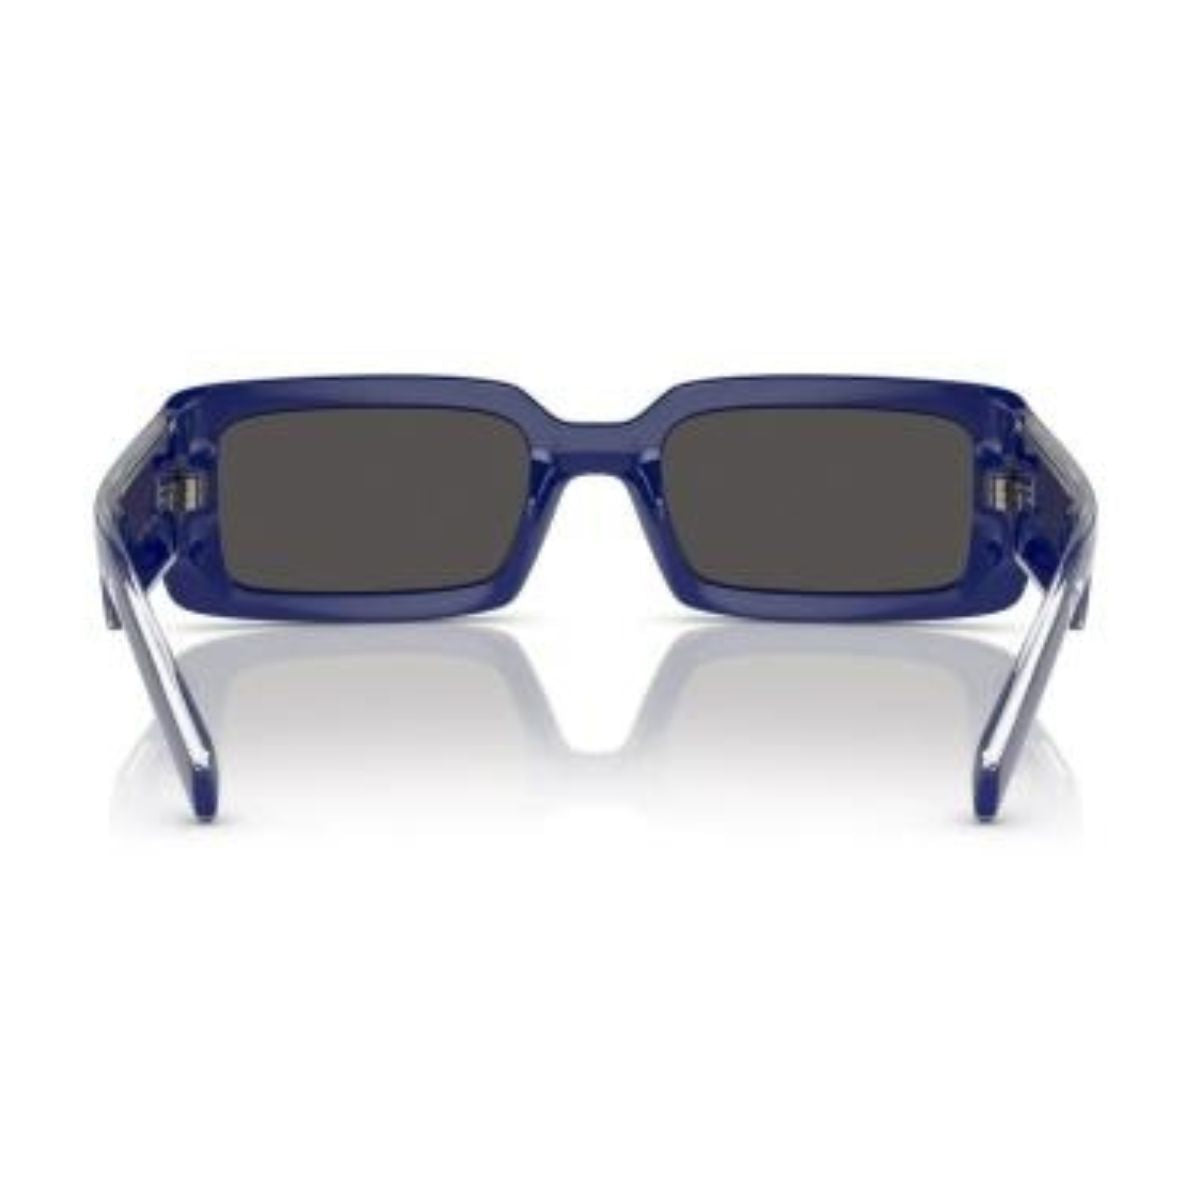 "Stylish blue Dolce & Gabbana DG6187 3094/87 sunglasses with UV protection, rectangle frame, unisex design."